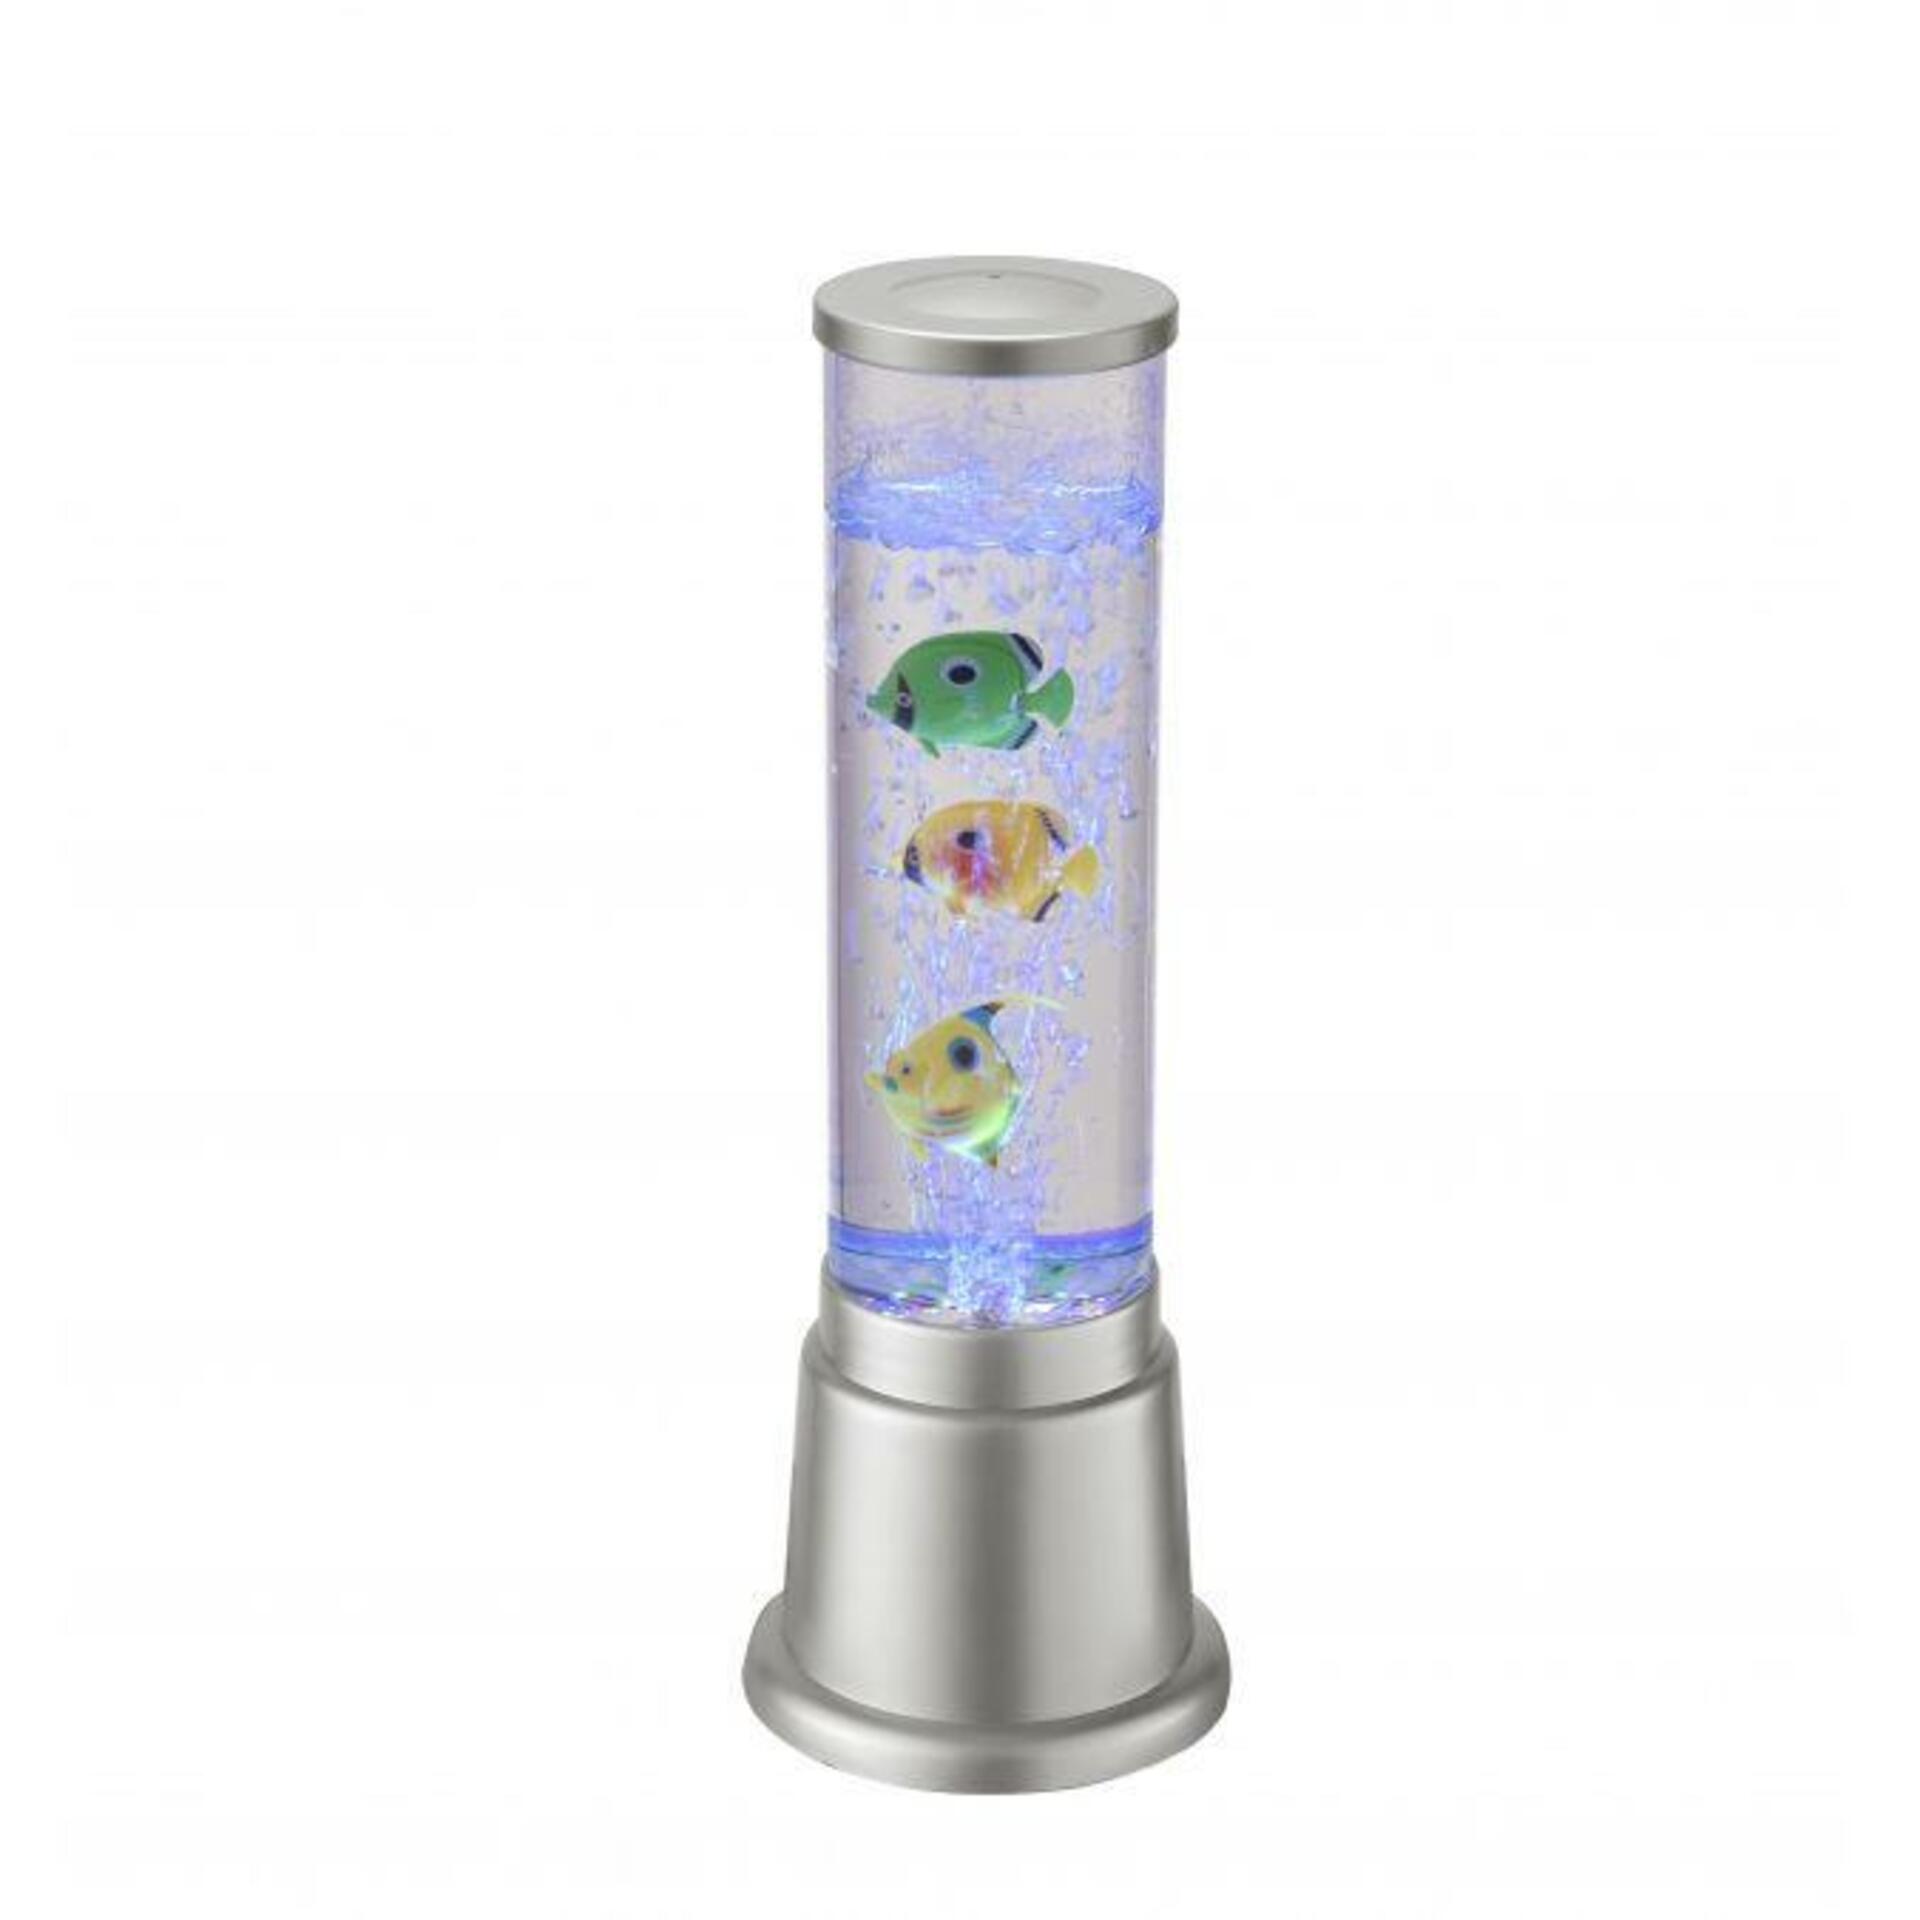 LEUCHTEN DIREKT is JUST LIGHT LED vodní sloupec, stříbrná, průměr 12,5cm, dekorativní RGB LD 85127-21